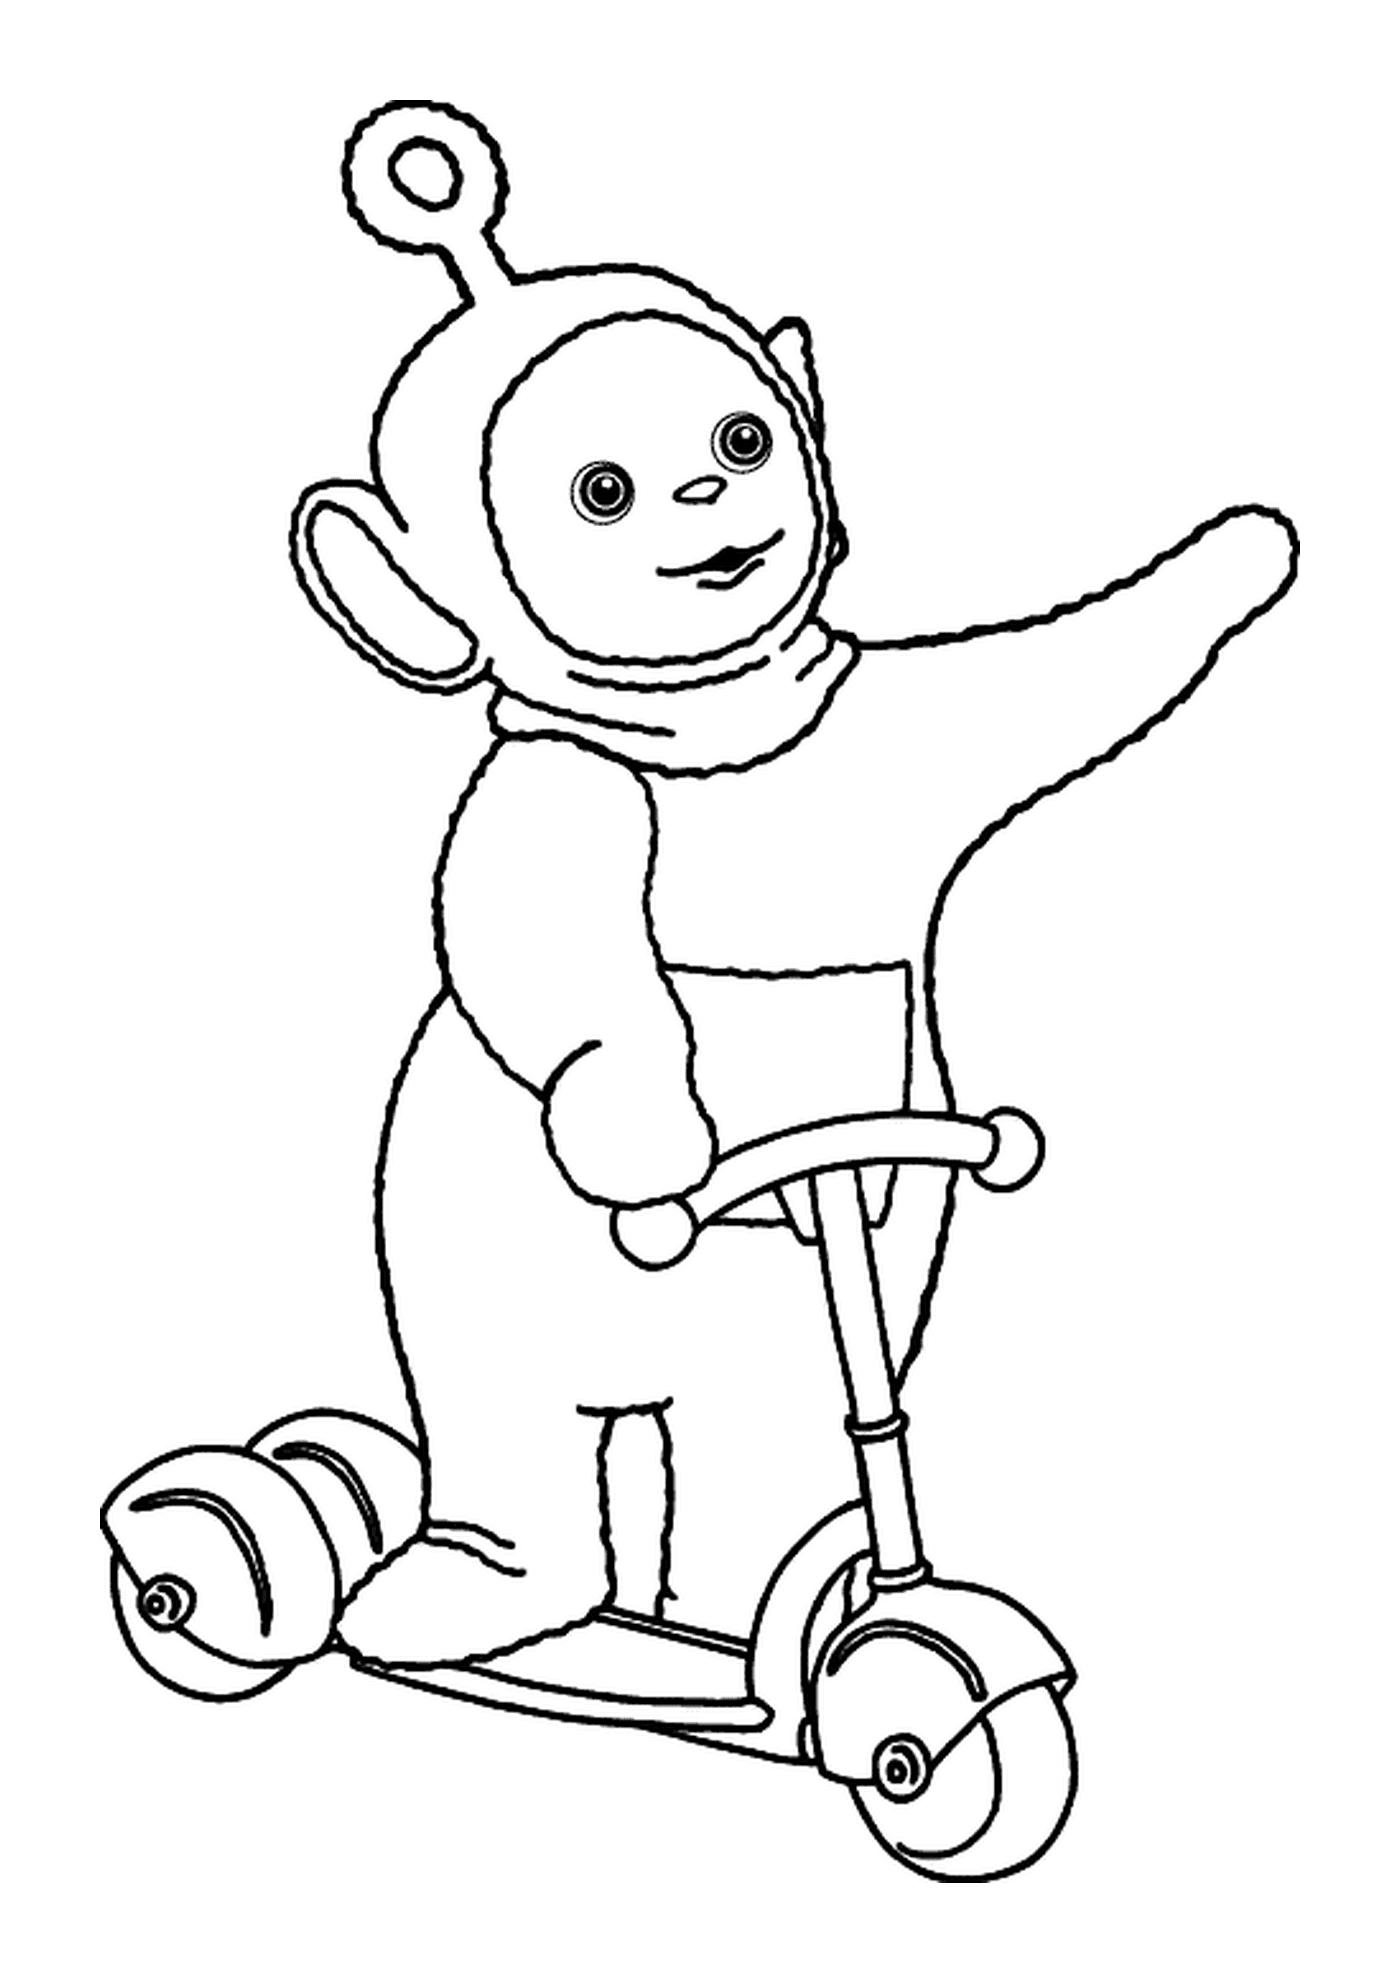  Affen reitet Dreirad Spaß 